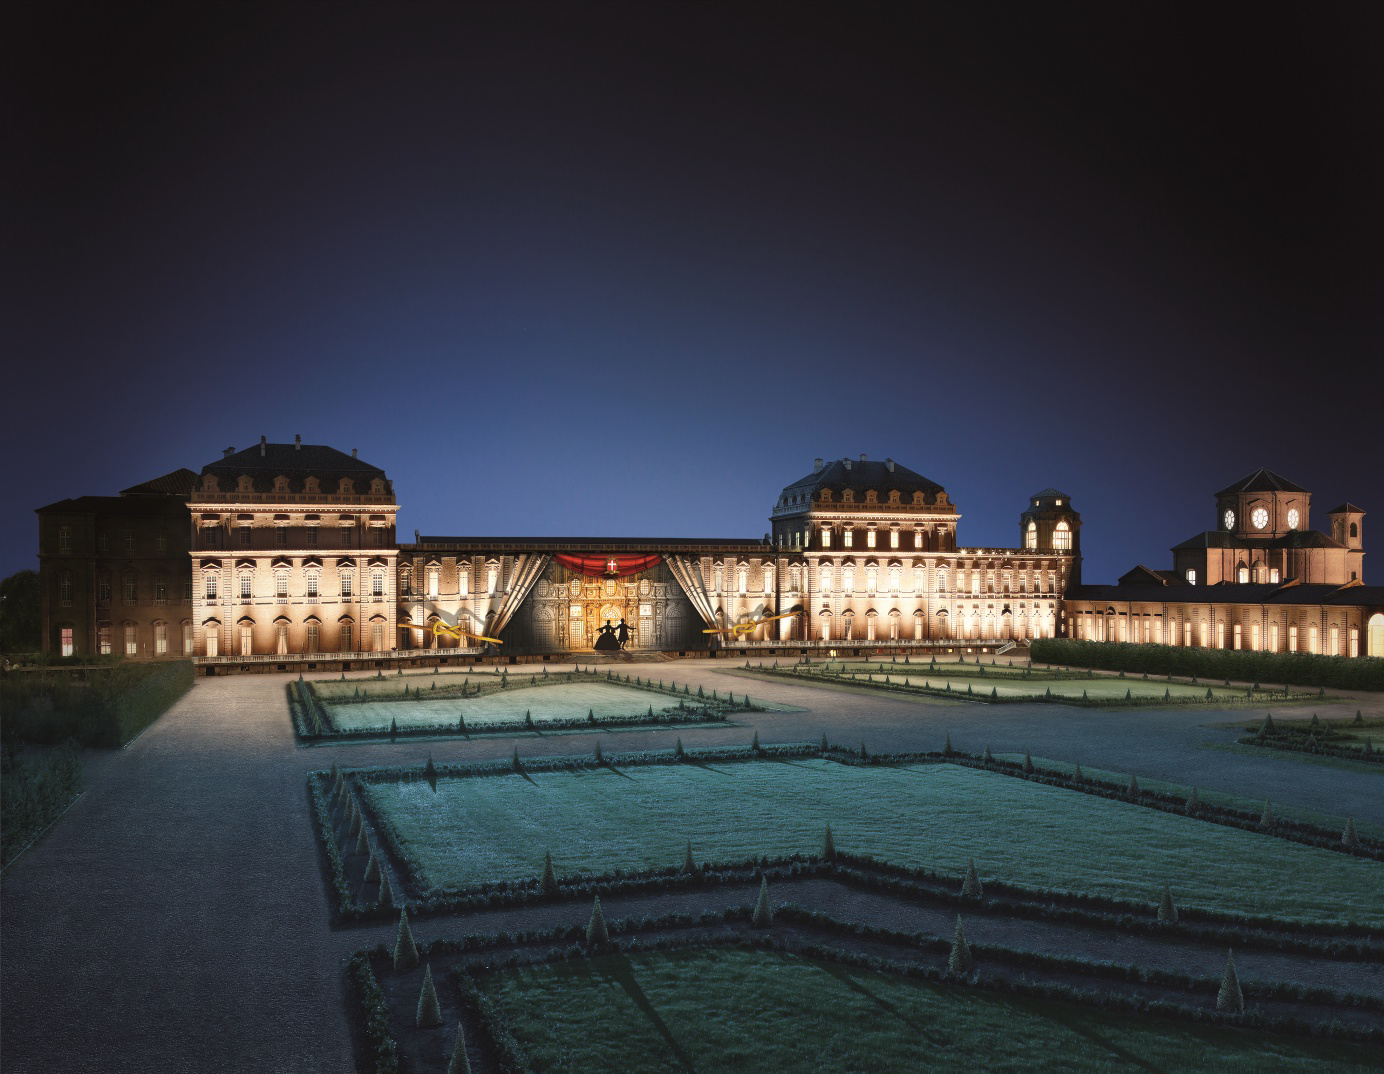 30 con ingresso speciale a 10 euro che comprende: Illuminare il Barocco, scenografico spettacolo di videomapping con proiezioni sulla facciata della Galleria Grande dai Giardini del Gran Parterre.